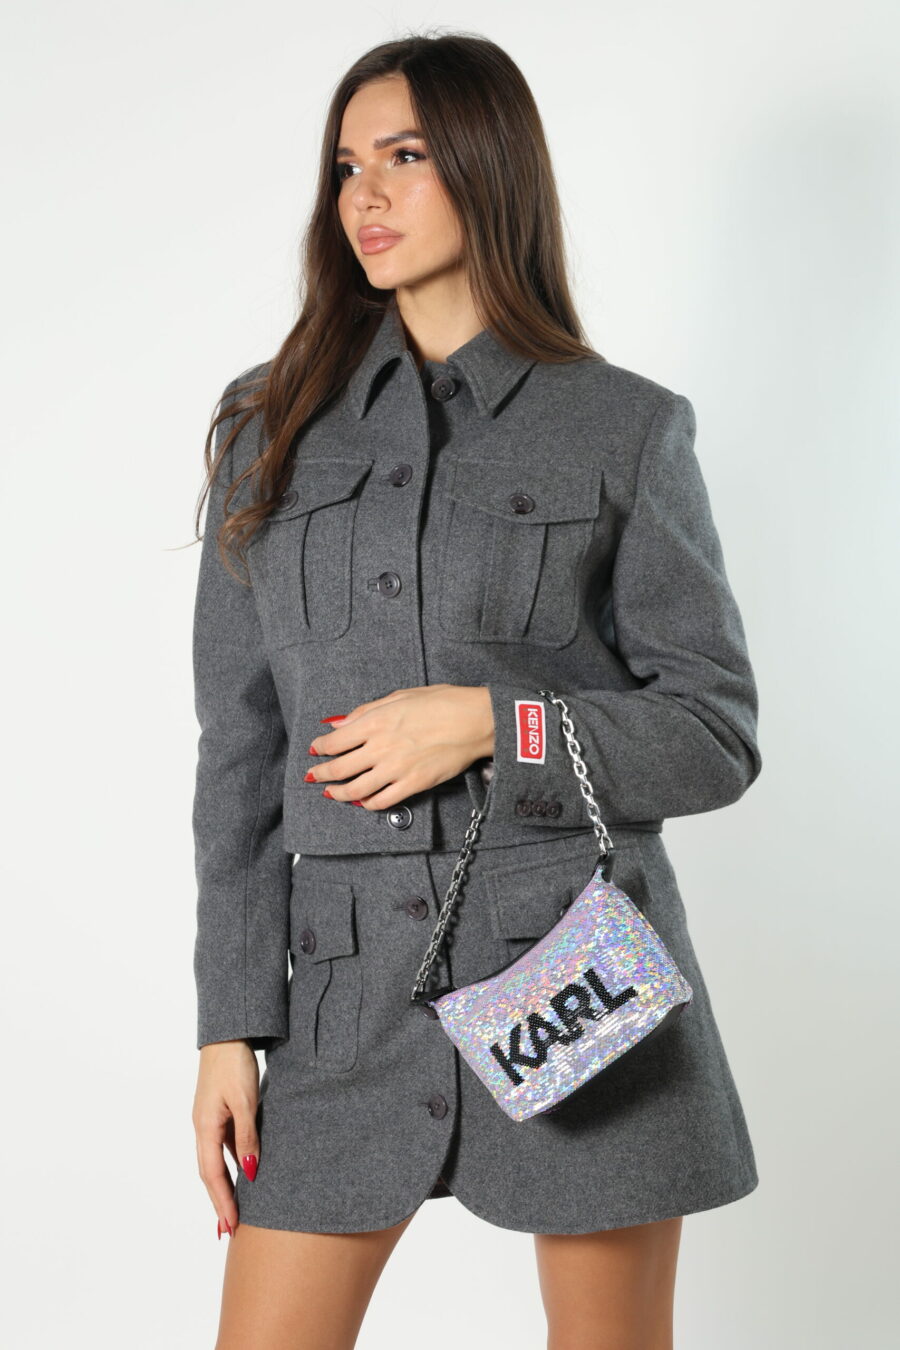 Grey sequined shoulder bag with black logo - 8052865435499 423 scaled